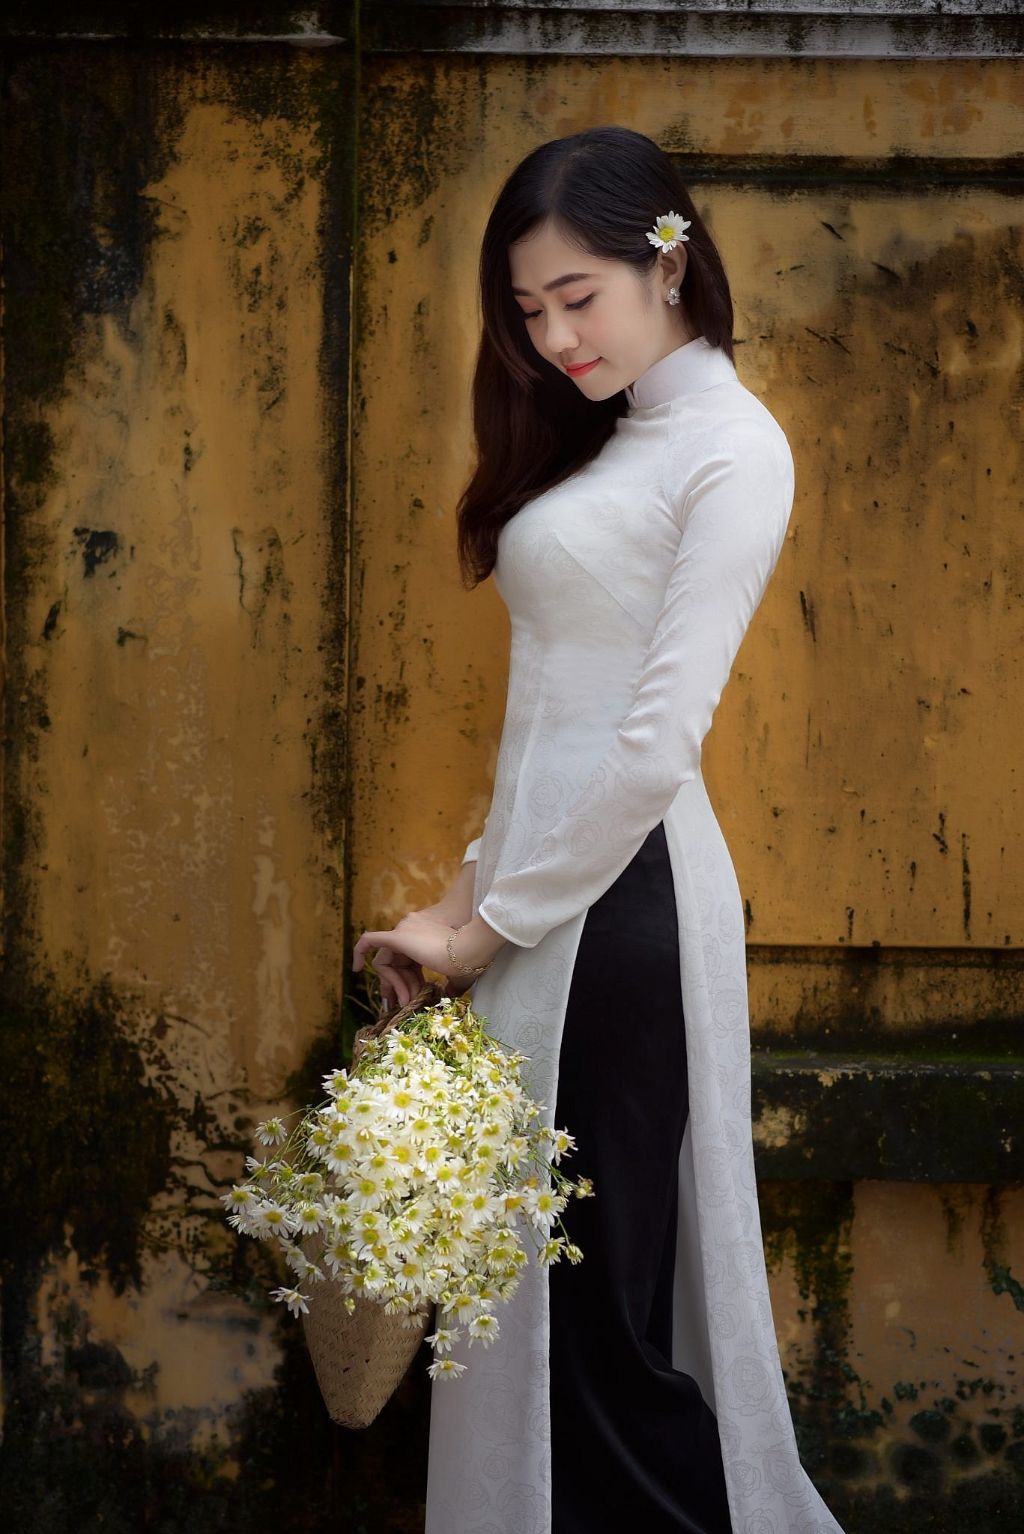 Dịch vụ chụp ảnh áo dài chất lượng tại Hồ Chí Minh